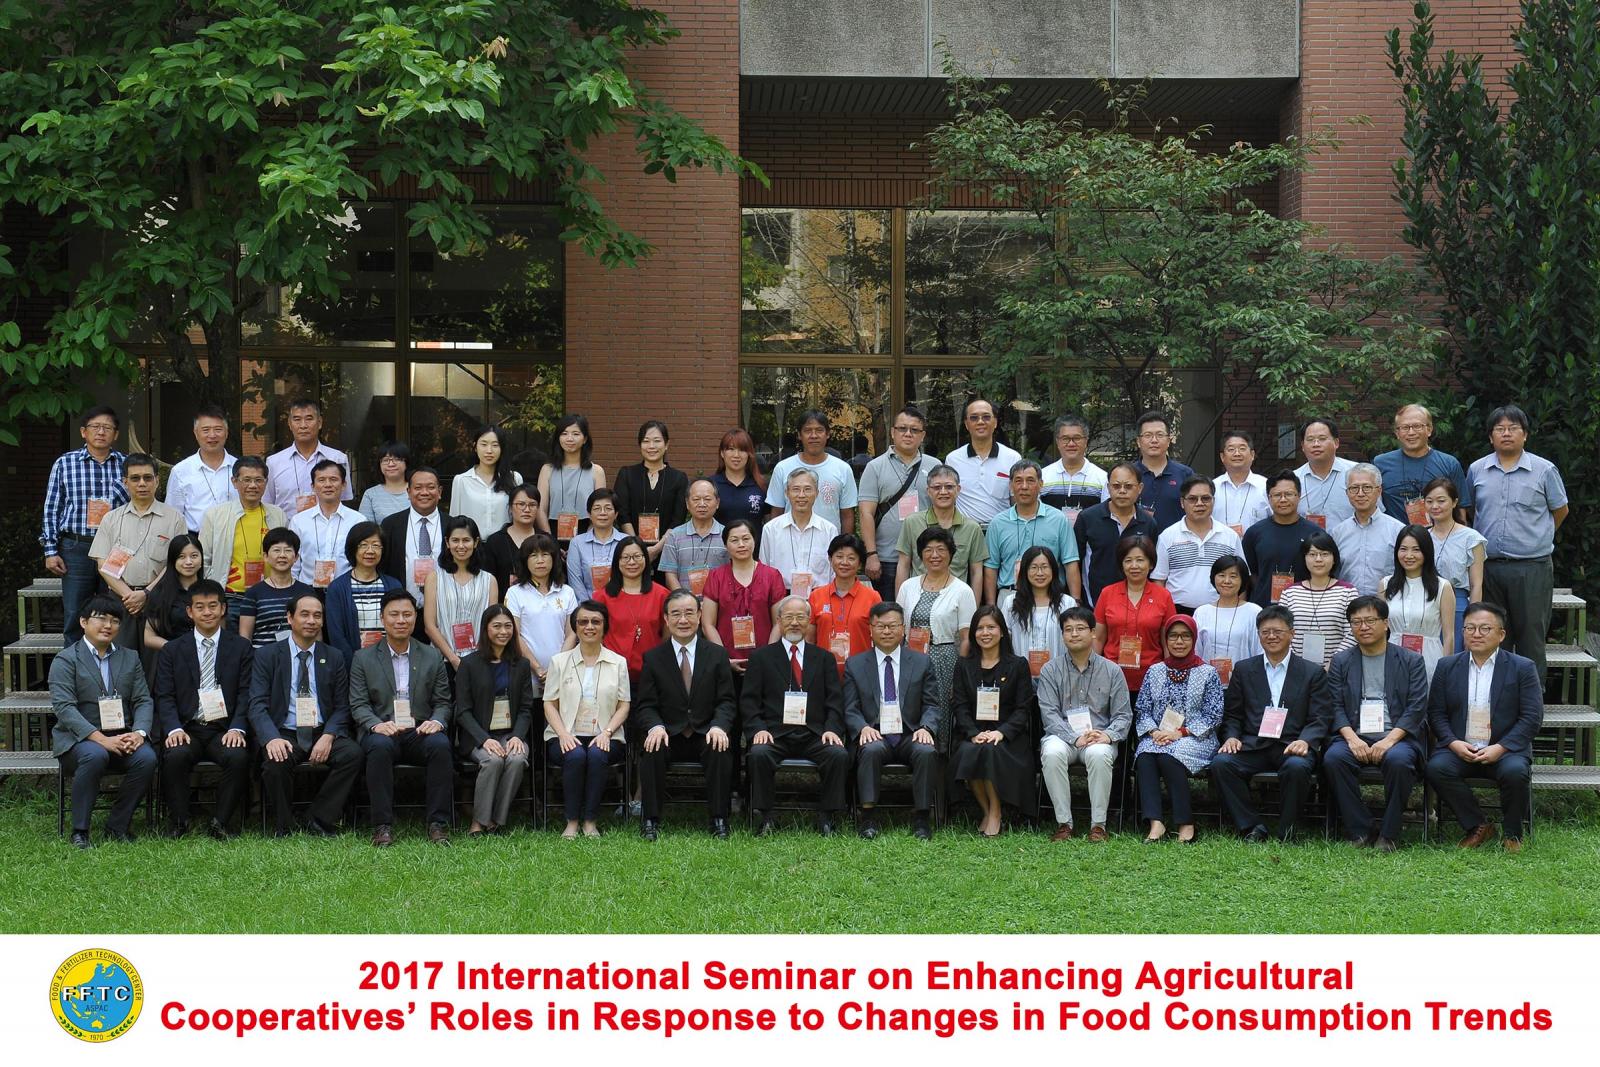 日本、韓國、馬來西亞、菲律賓、泰國、越南、印尼及我國等8個國家10位產官學講者與農民組織團體代表約50名參加